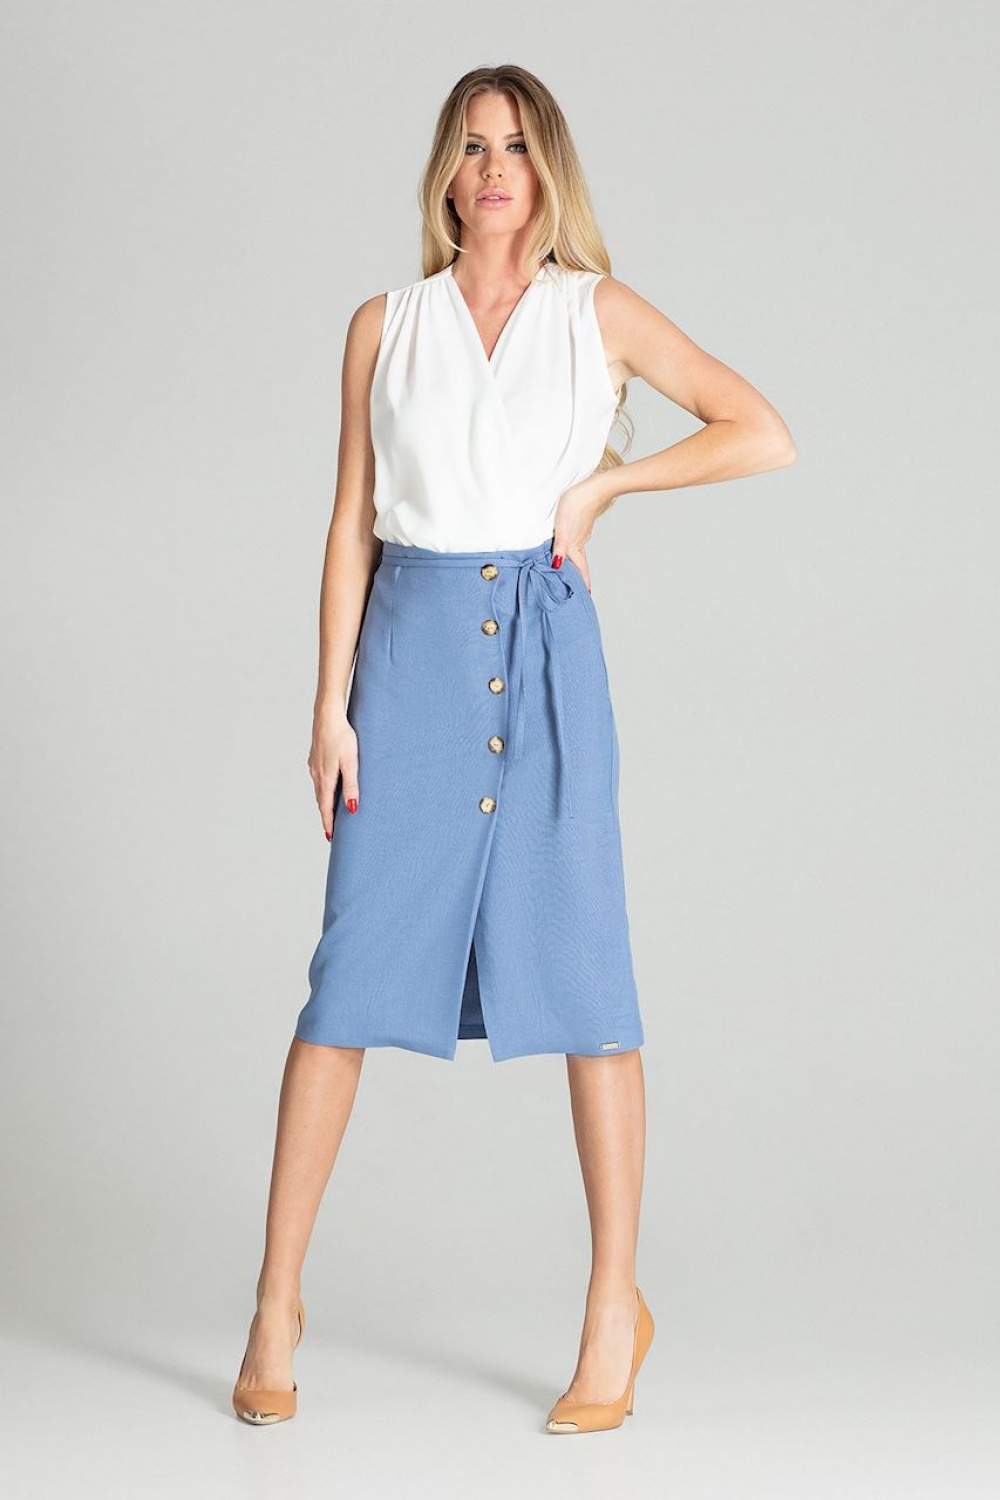  Skirt model 141758 Figl  blue